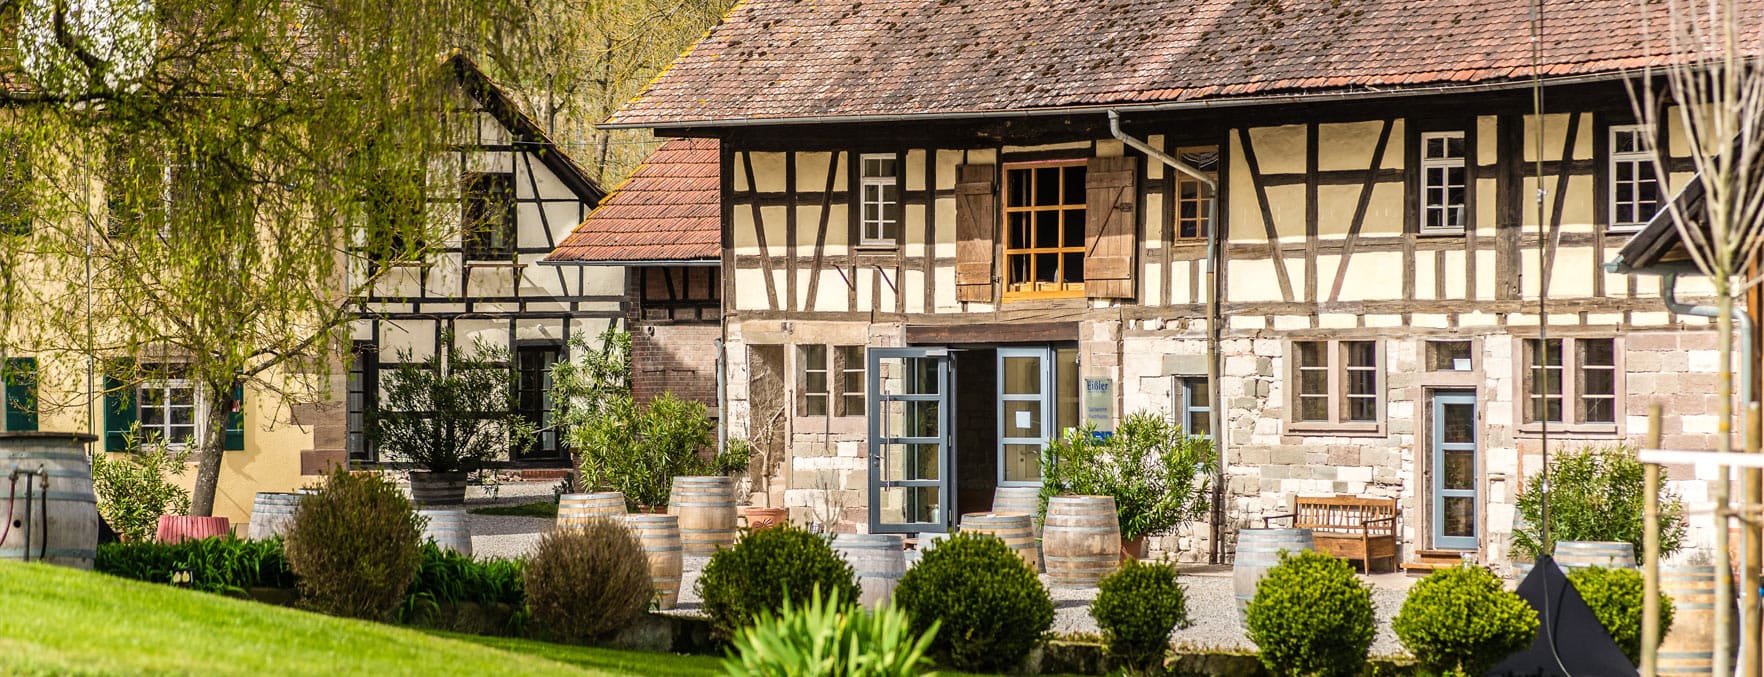 Traditionelle Fachwerkhäuser in ländlicher Umgebung mit viel Grün beim Weingut Steinbachhof, Vaihingen.